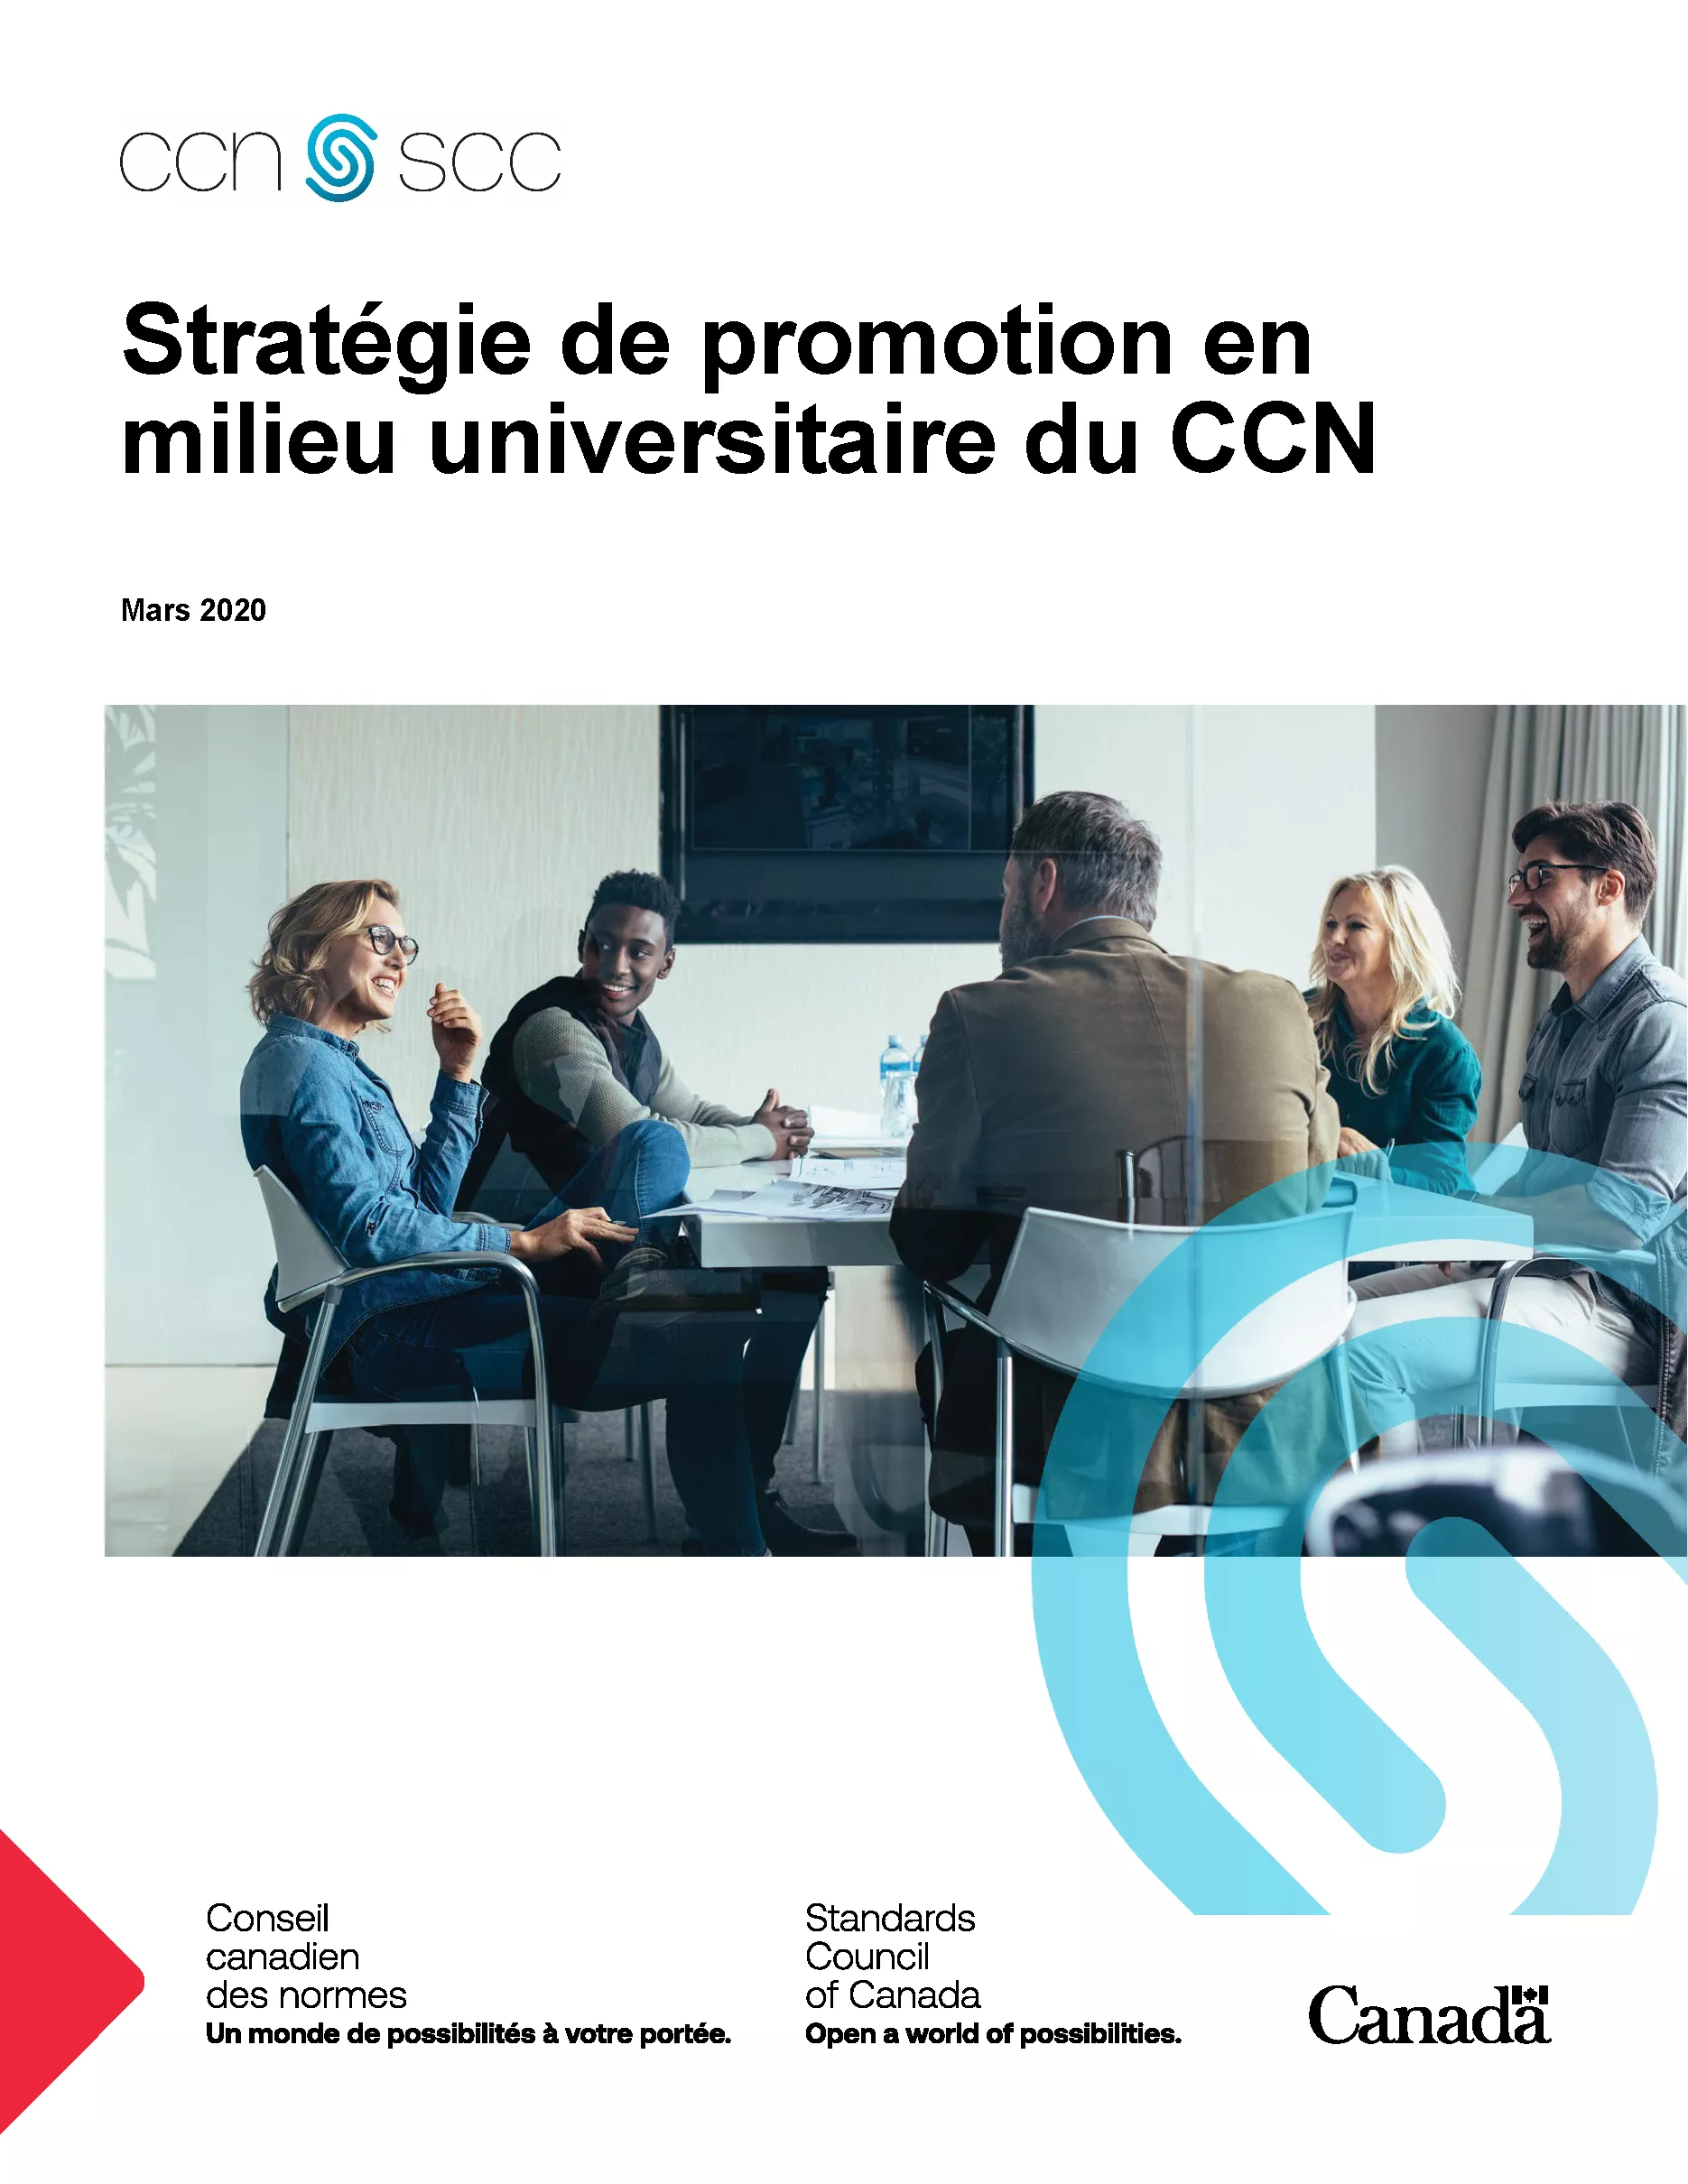 Stratégie de promotion en milieu universitaire du CCN